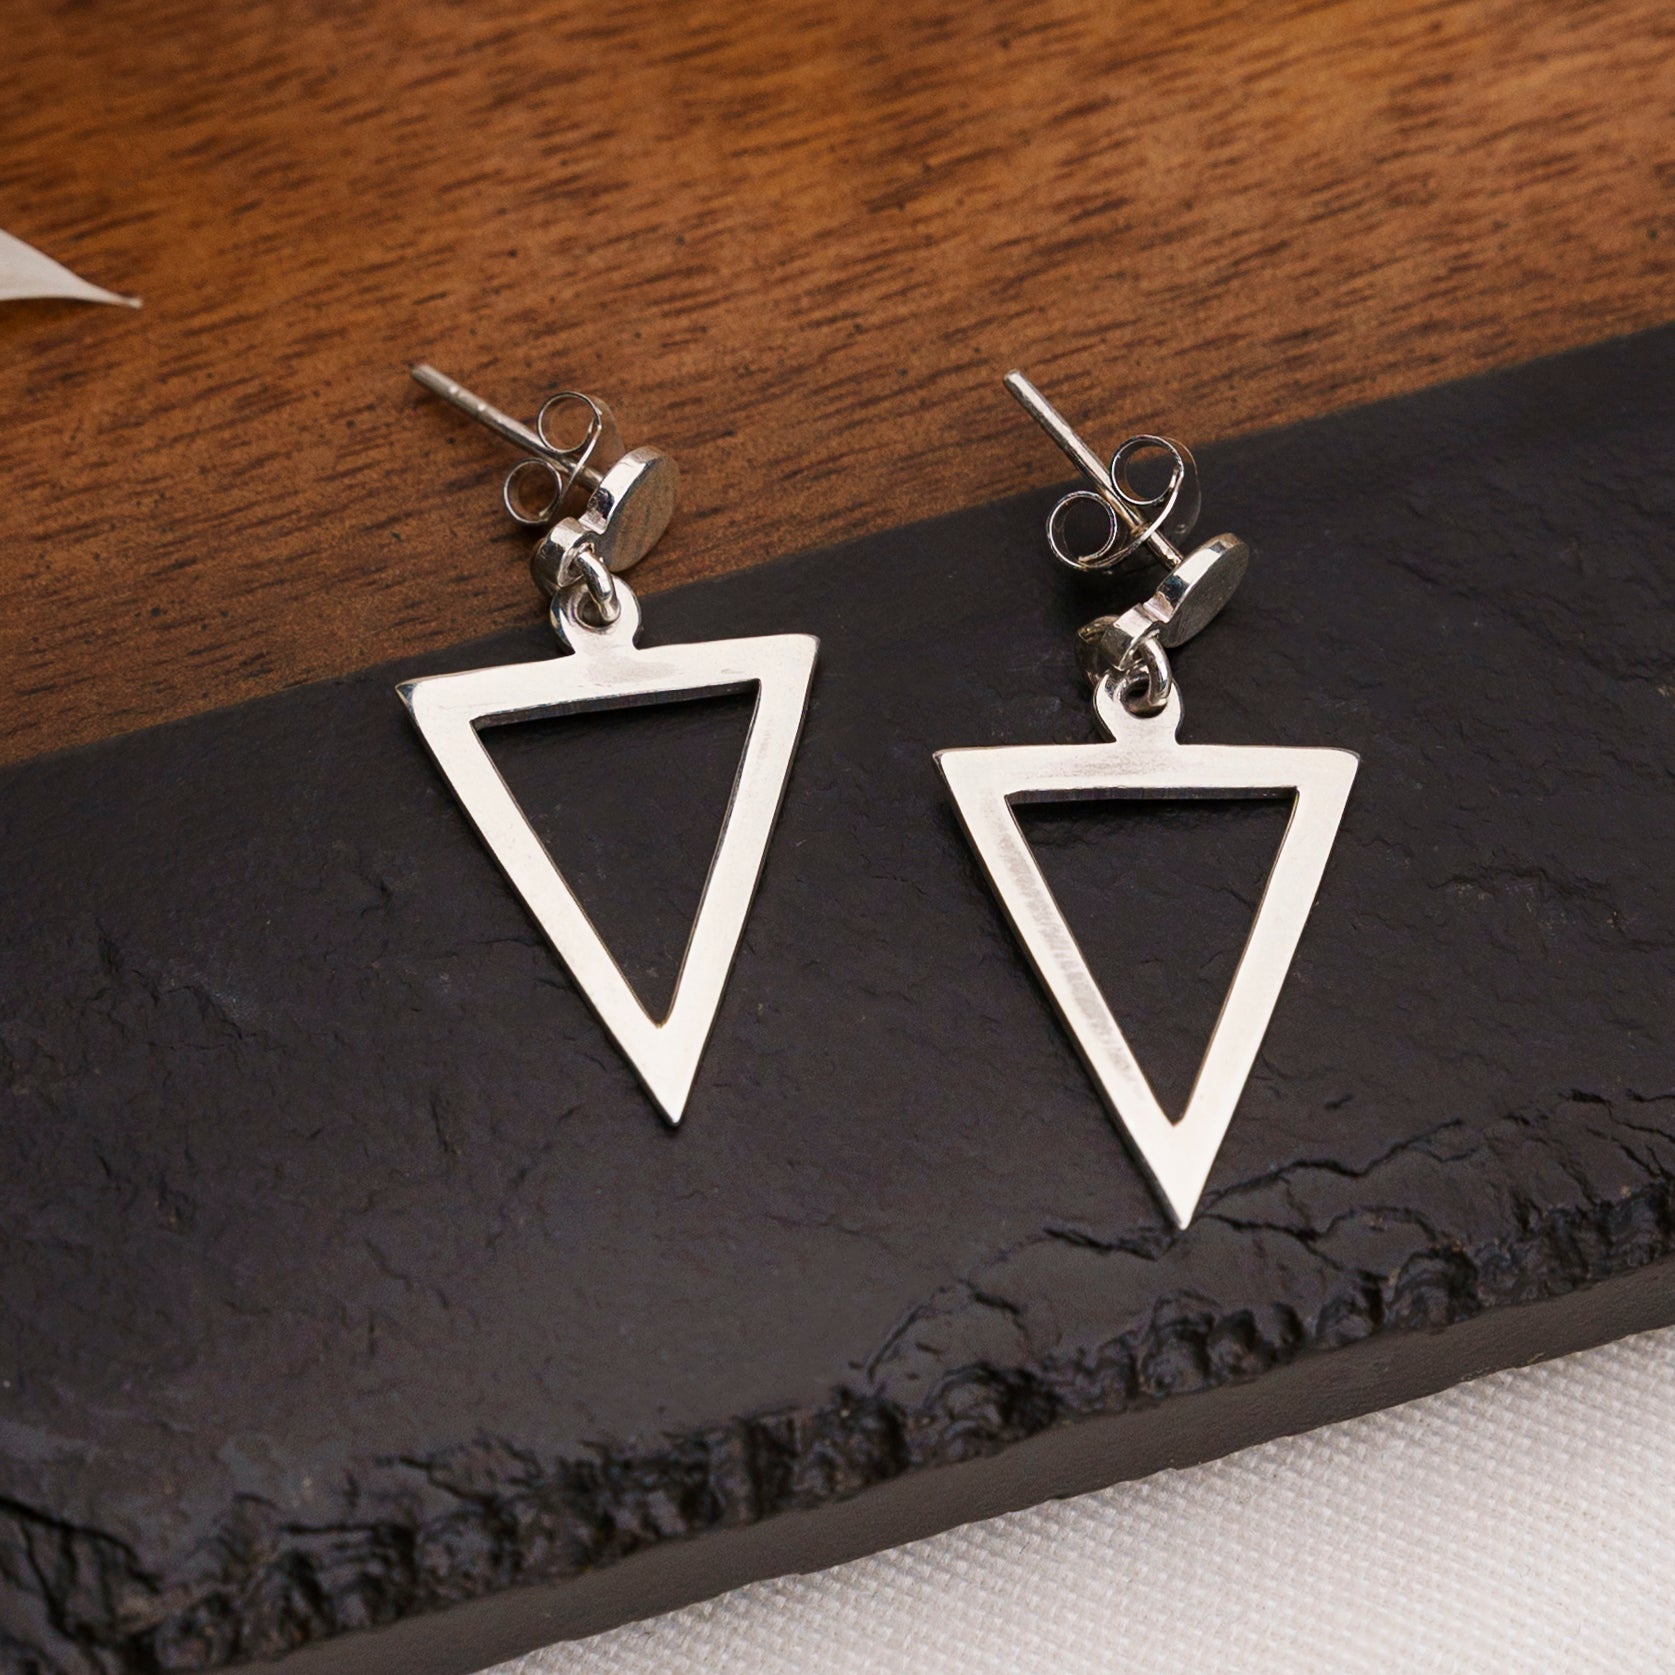 Brincos Triângulo Invertido em Prata 925 – Panna